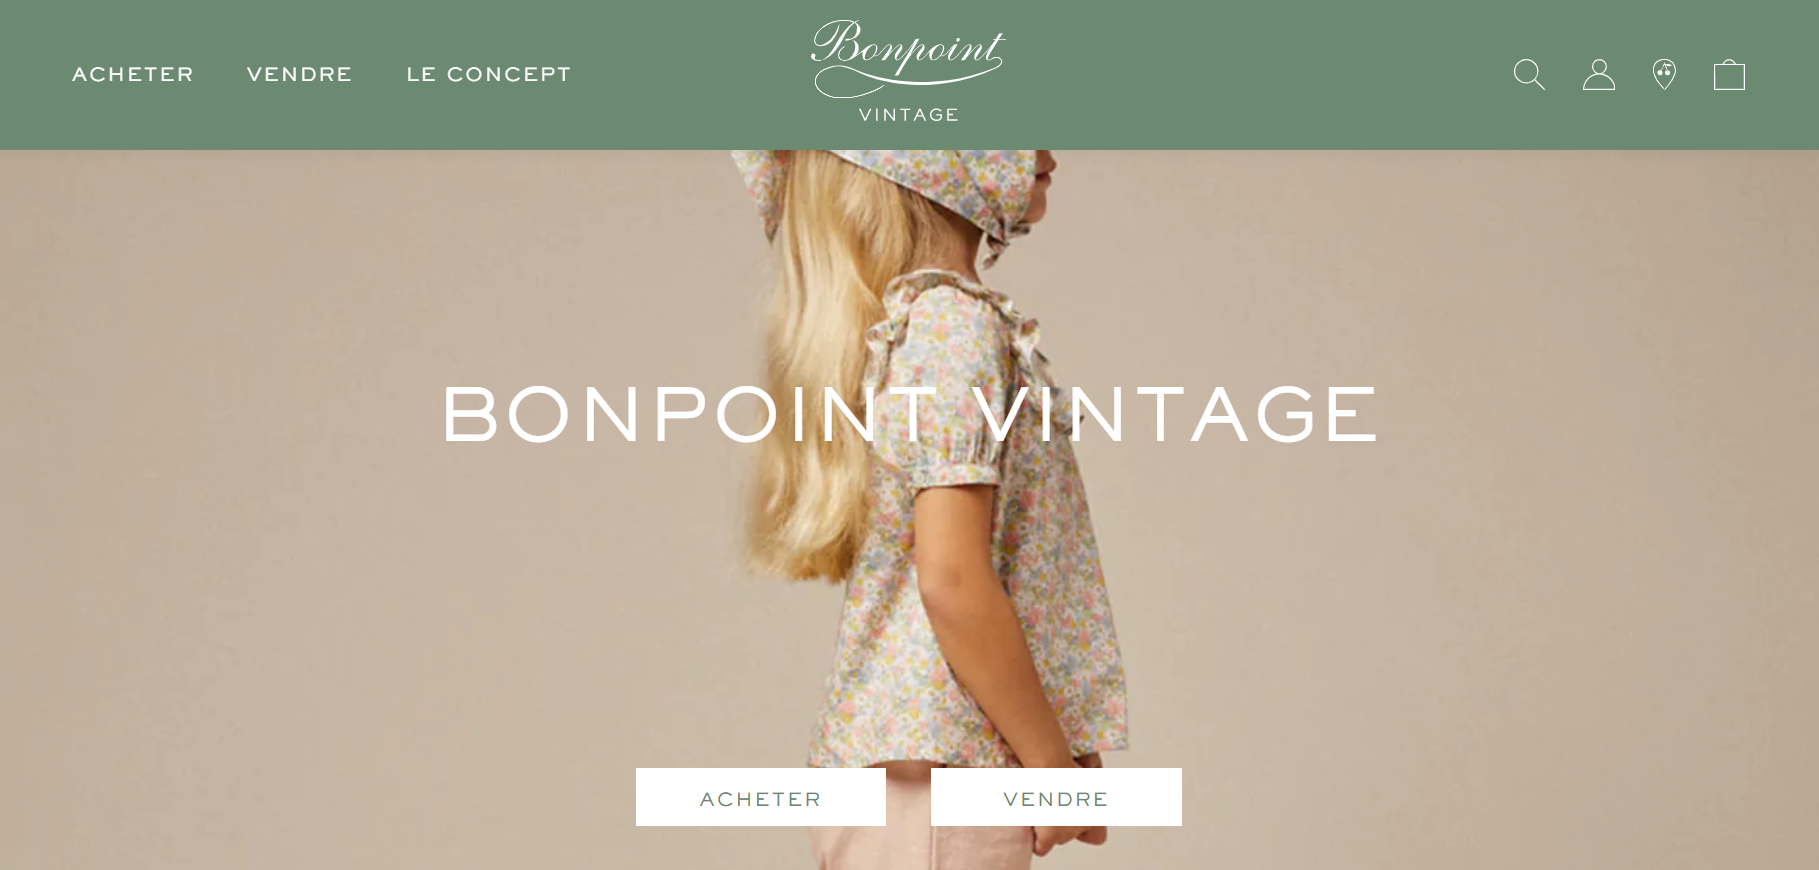 法国童装品牌 Bonpoint 推出二手平台